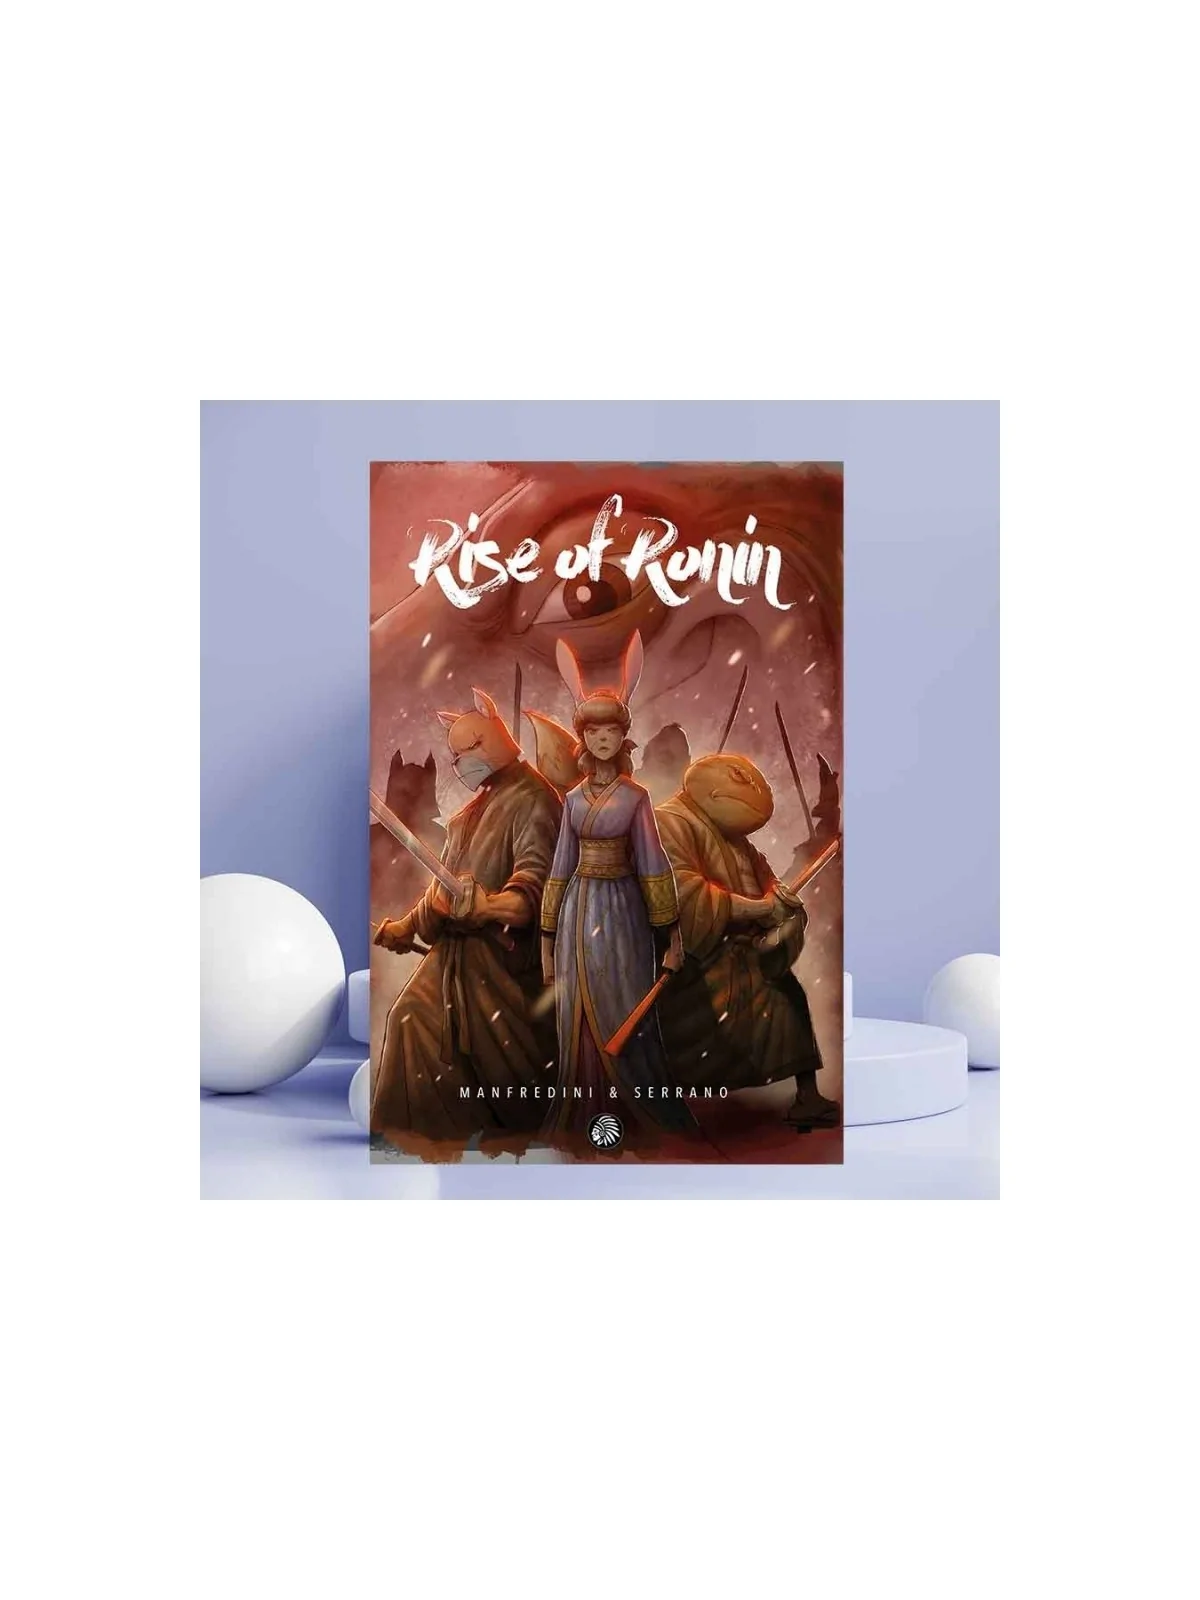 Comprar Rise of Ronin barato al mejor precio 13,30 € de Apache Libros